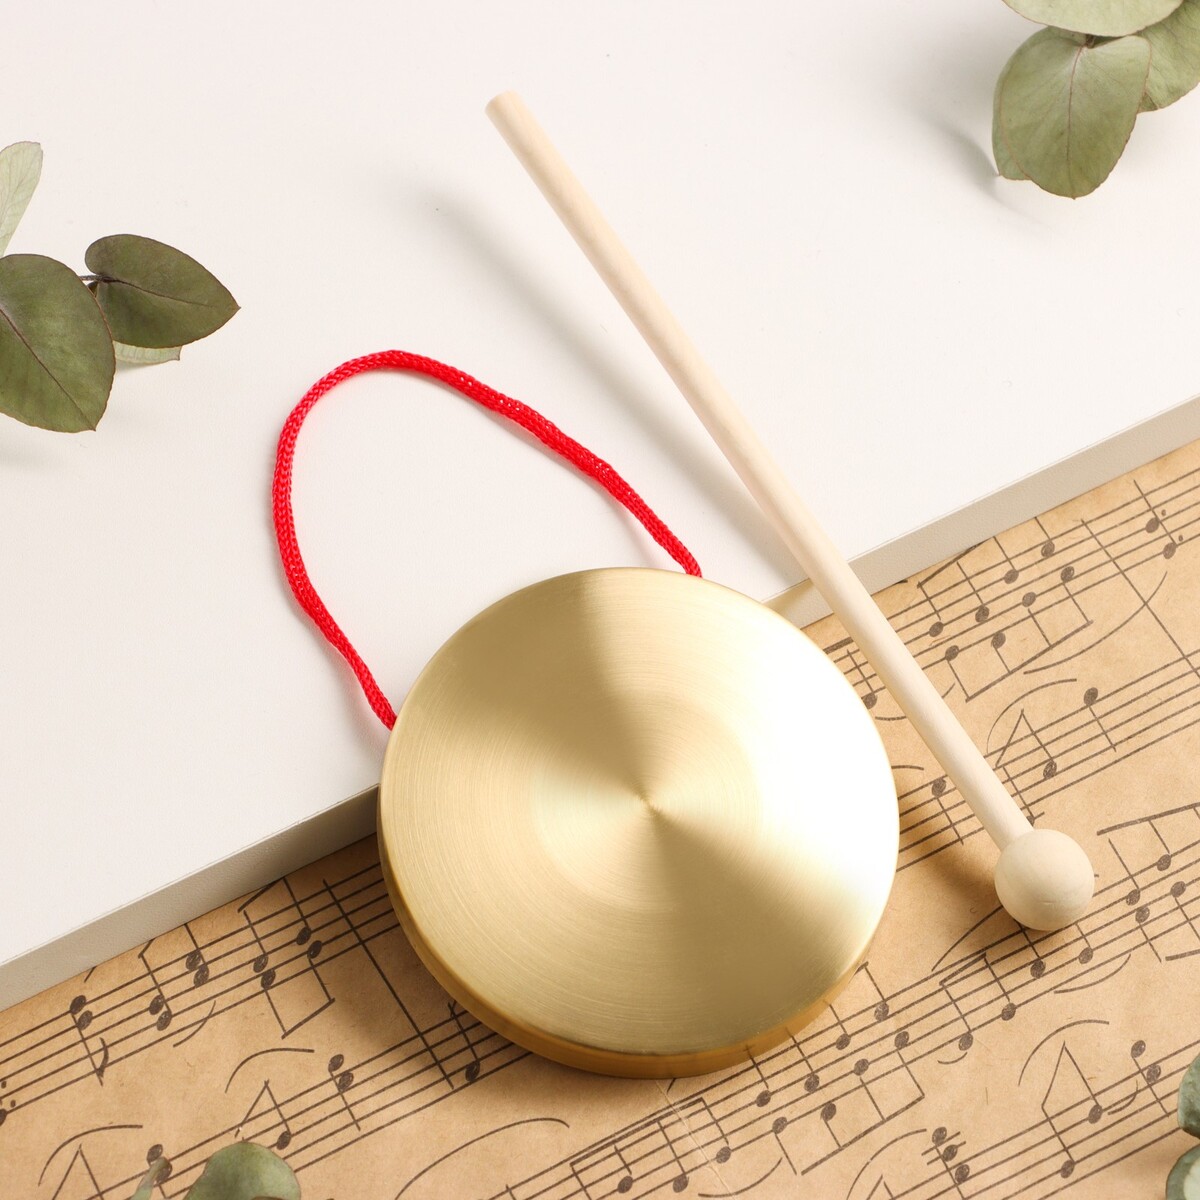 Музыкальный инструмент гонг music life 9 см, колотушка в комплекте музыкальный инструмент гуиро music life деревянный